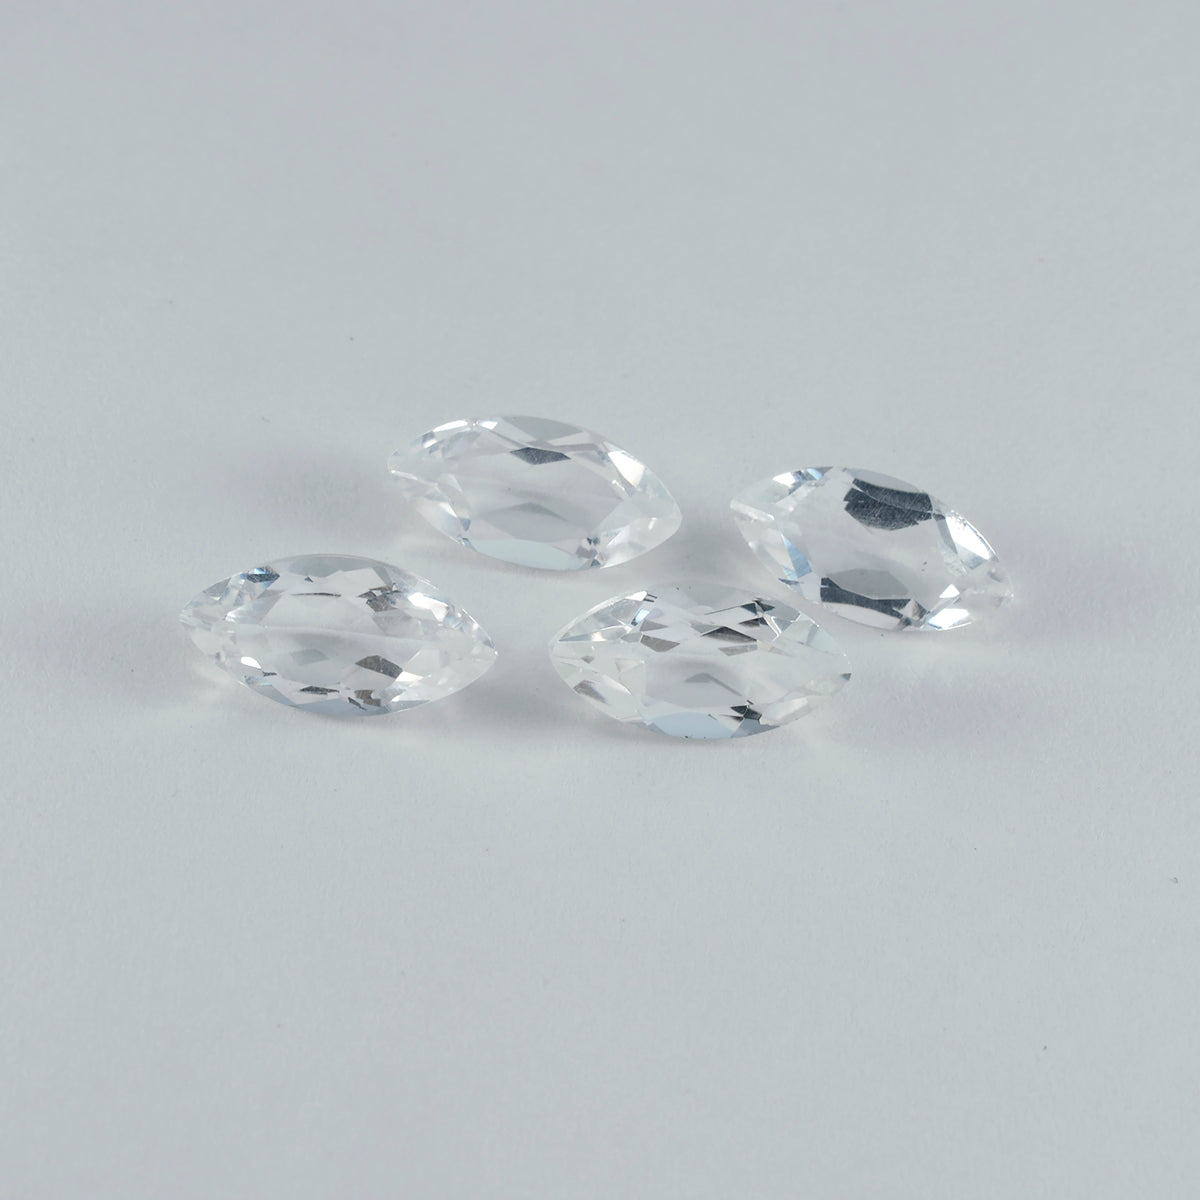 riyogems 1шт белый кристалл кварца ограненный 8x16 мм драгоценный камень в форме маркиза A1 качество